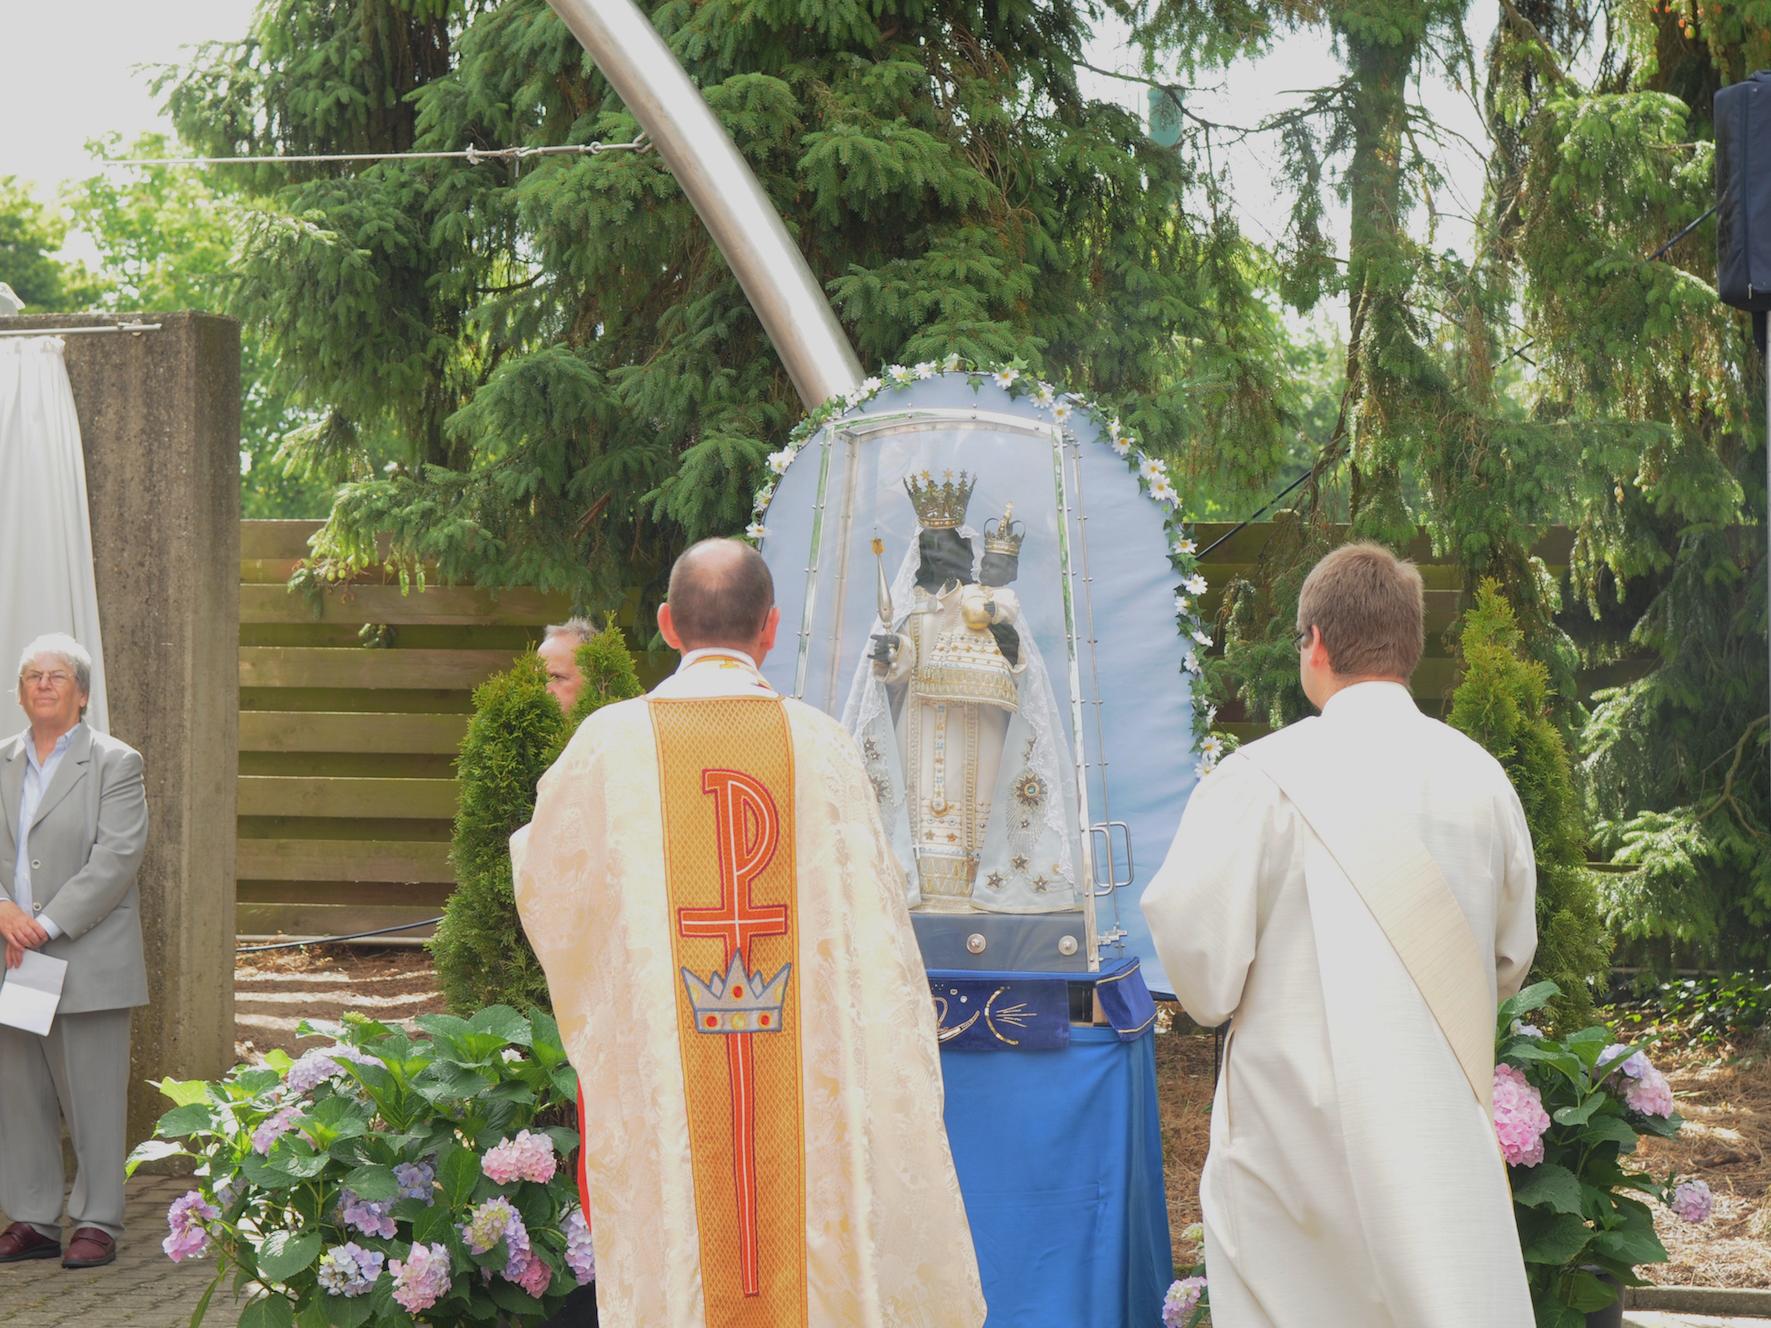 Die schwarze Madonna wird bei der Holtumer Oktav jedes Jahr von Pilgergemeinschaften verehrt.